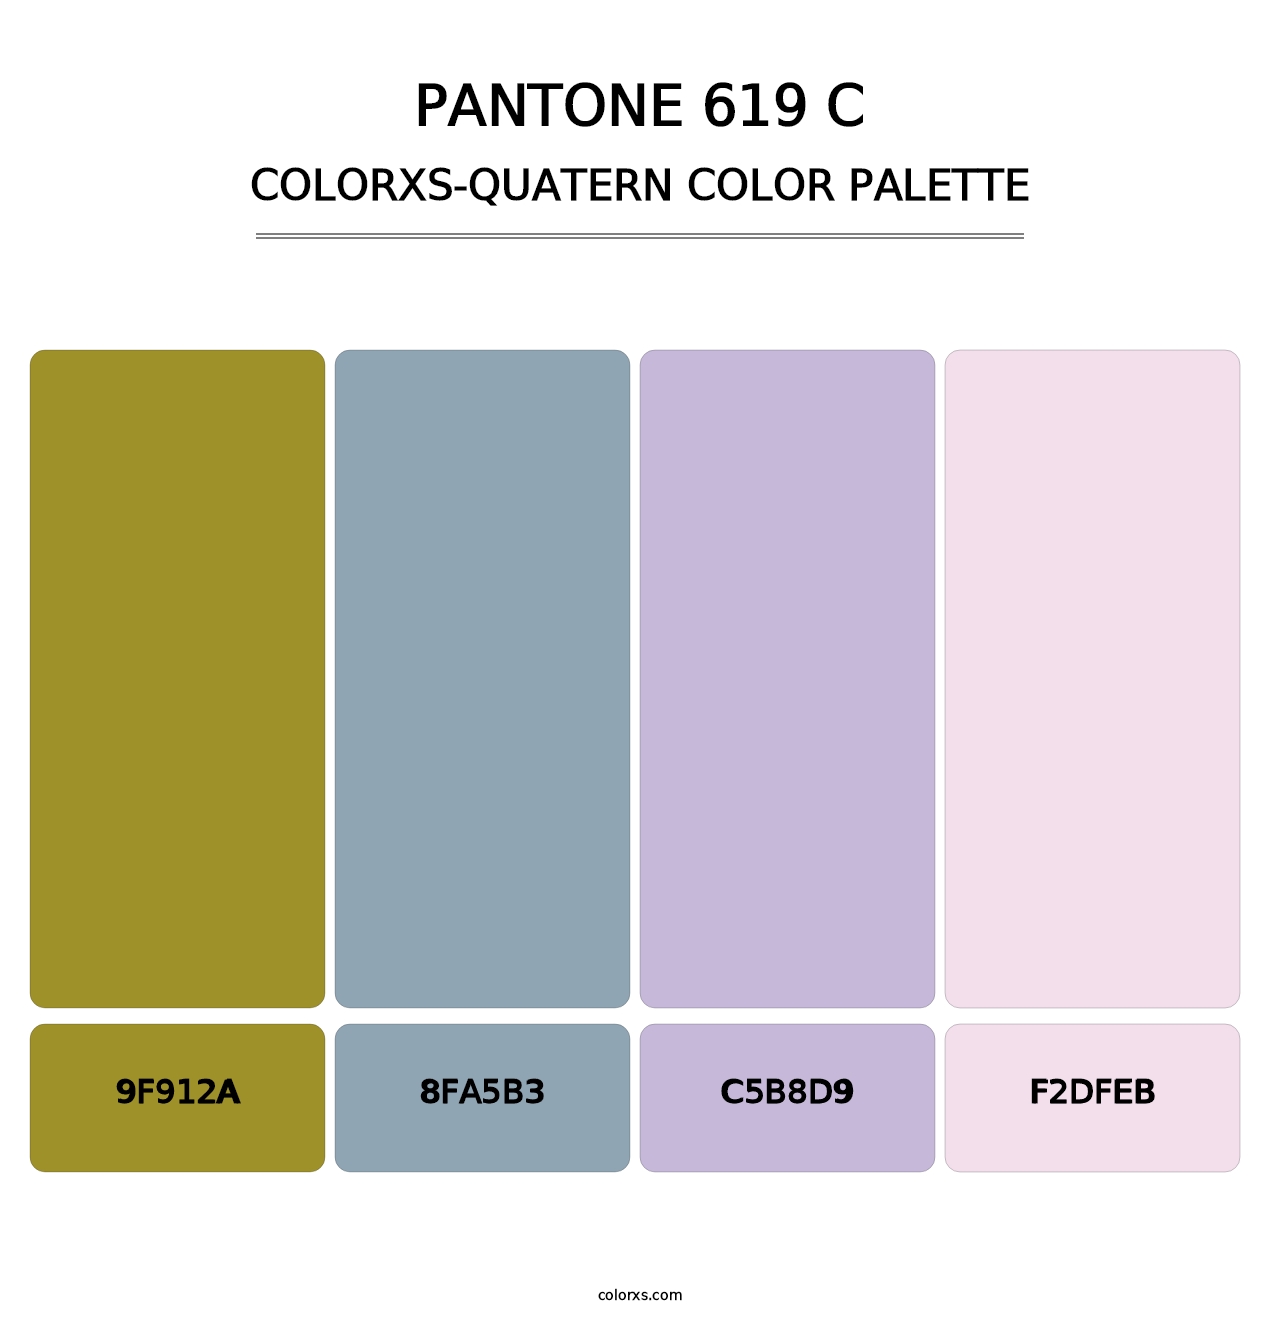 PANTONE 619 C - Colorxs Quatern Palette